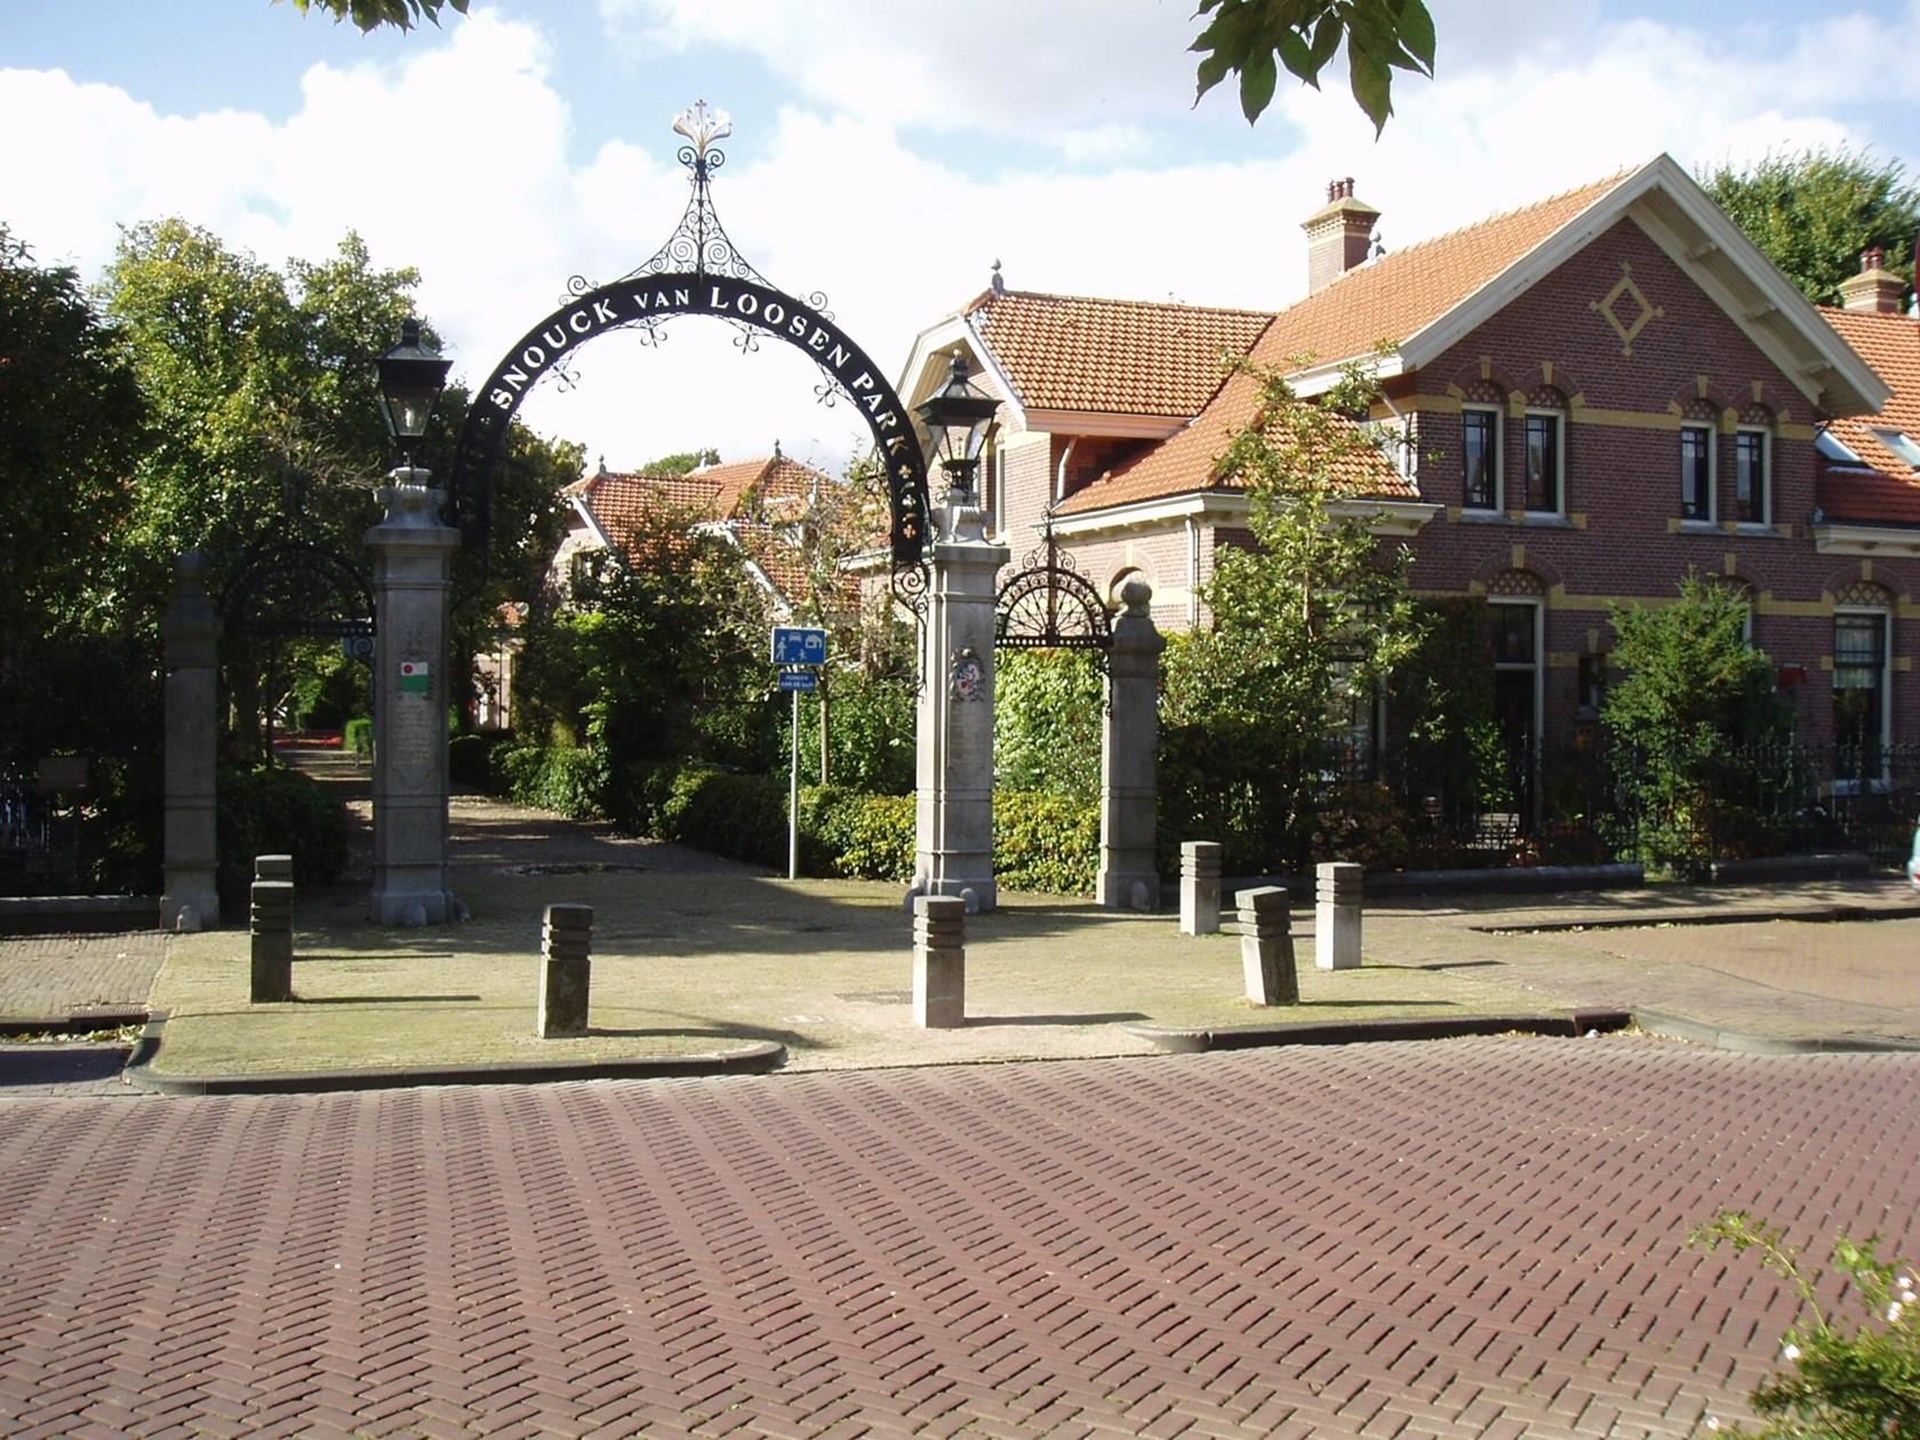 Snouck van Loosenpark banner